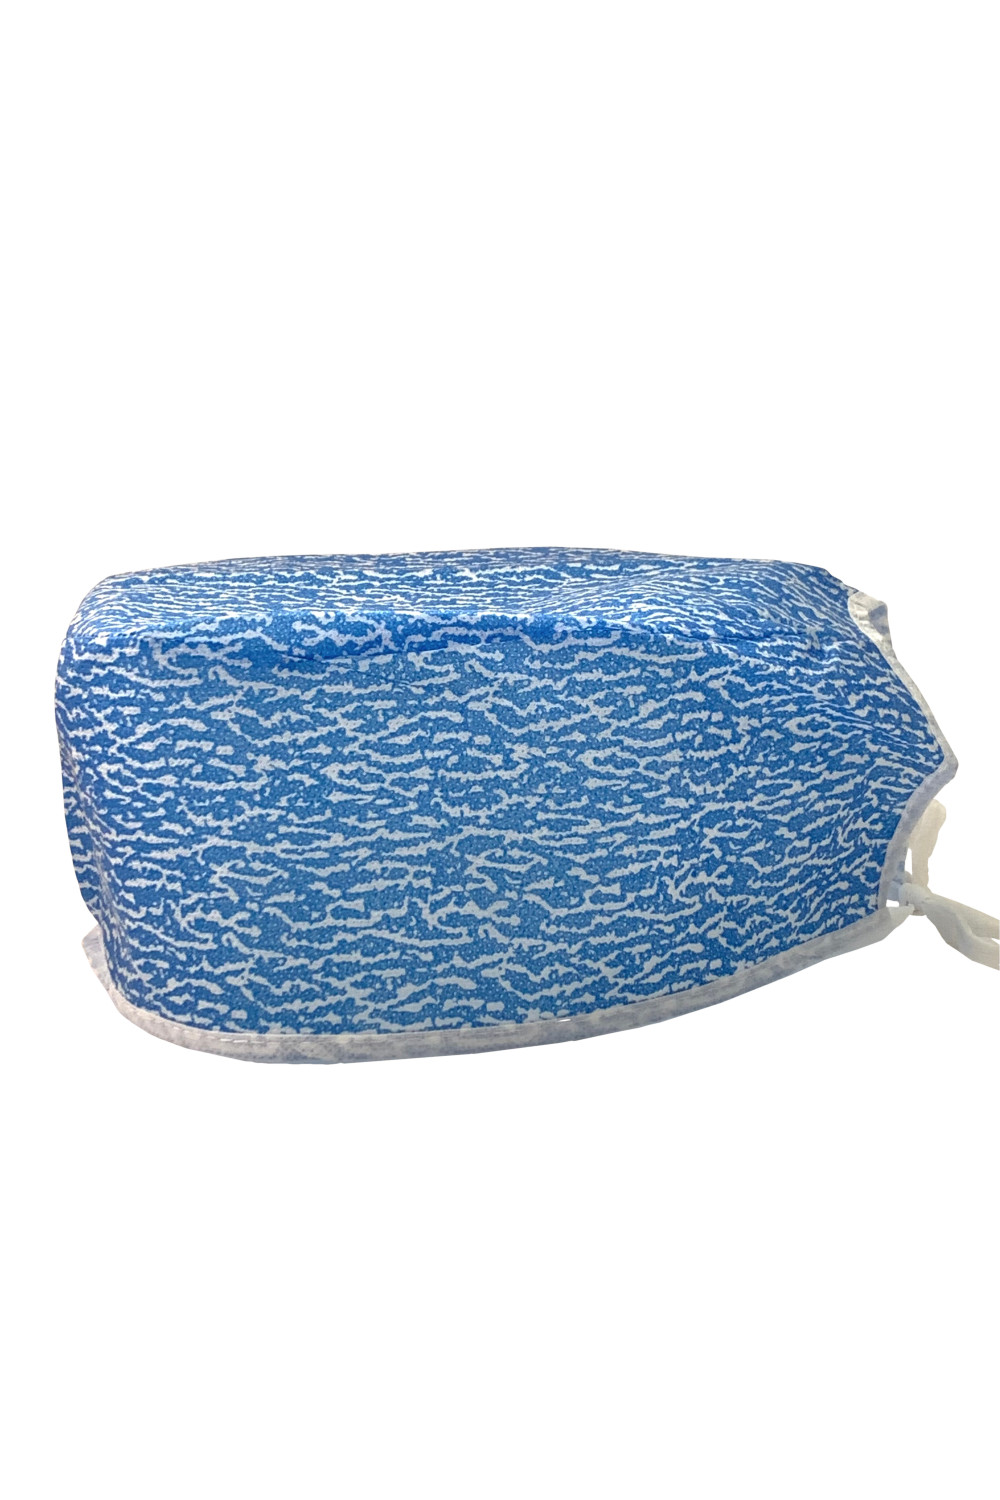 Czepek medyczny jednorazowy flizelinowy chirurgiczny ochronny wzór błękitna zebra czepek wzorzysty czepek we wzorki